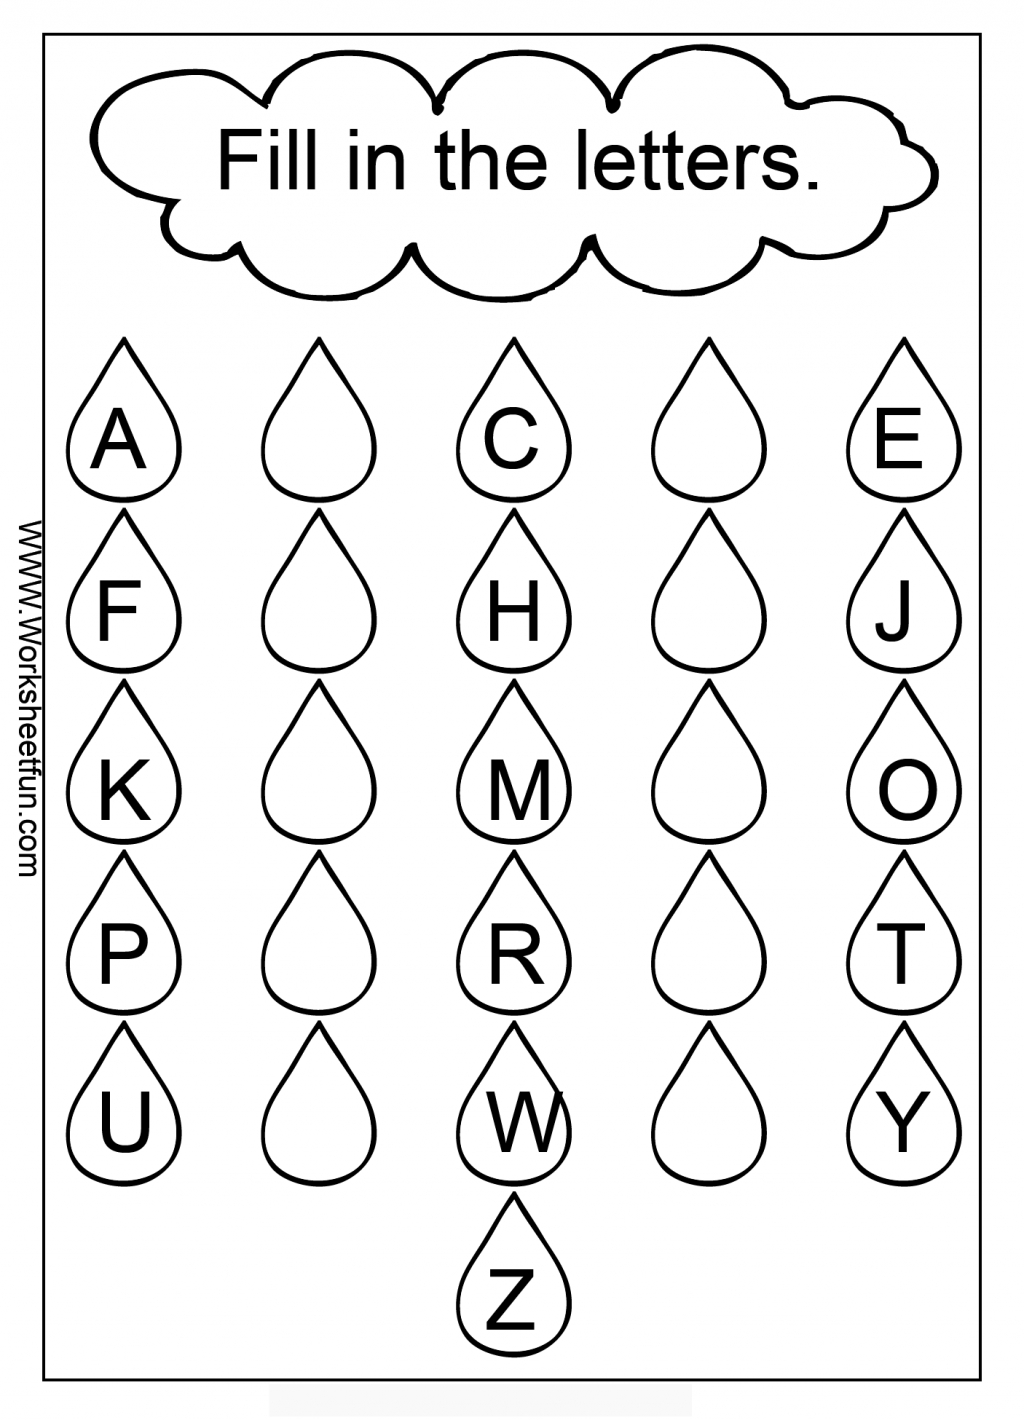 Jr Kg Alphabet Worksheets Images Of Missing Letter Worksheet inside Letter I Alphabet Worksheets